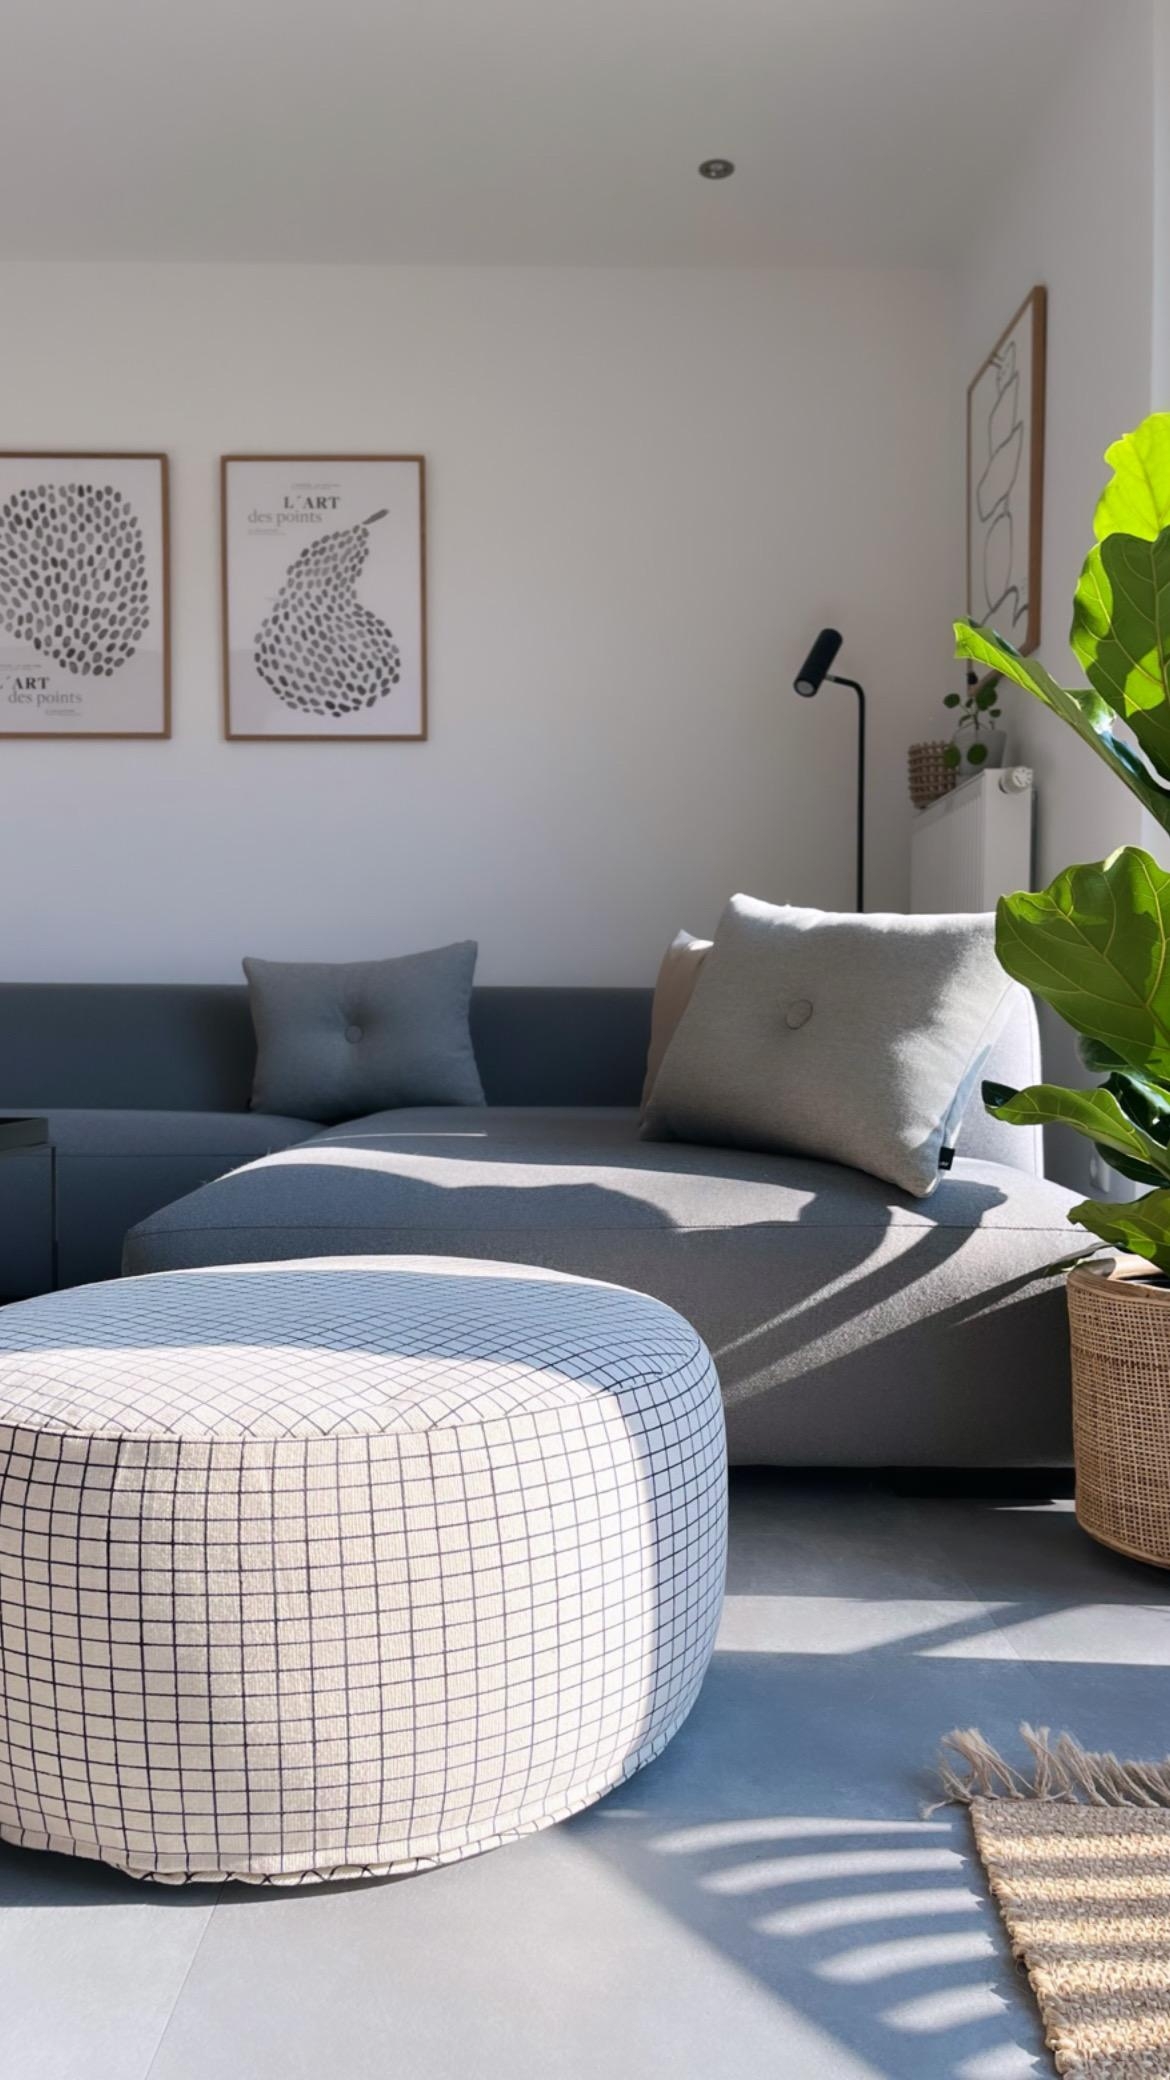 #skandinavischwohnen#couchstyle
#wohnzimner#couch#haydesign